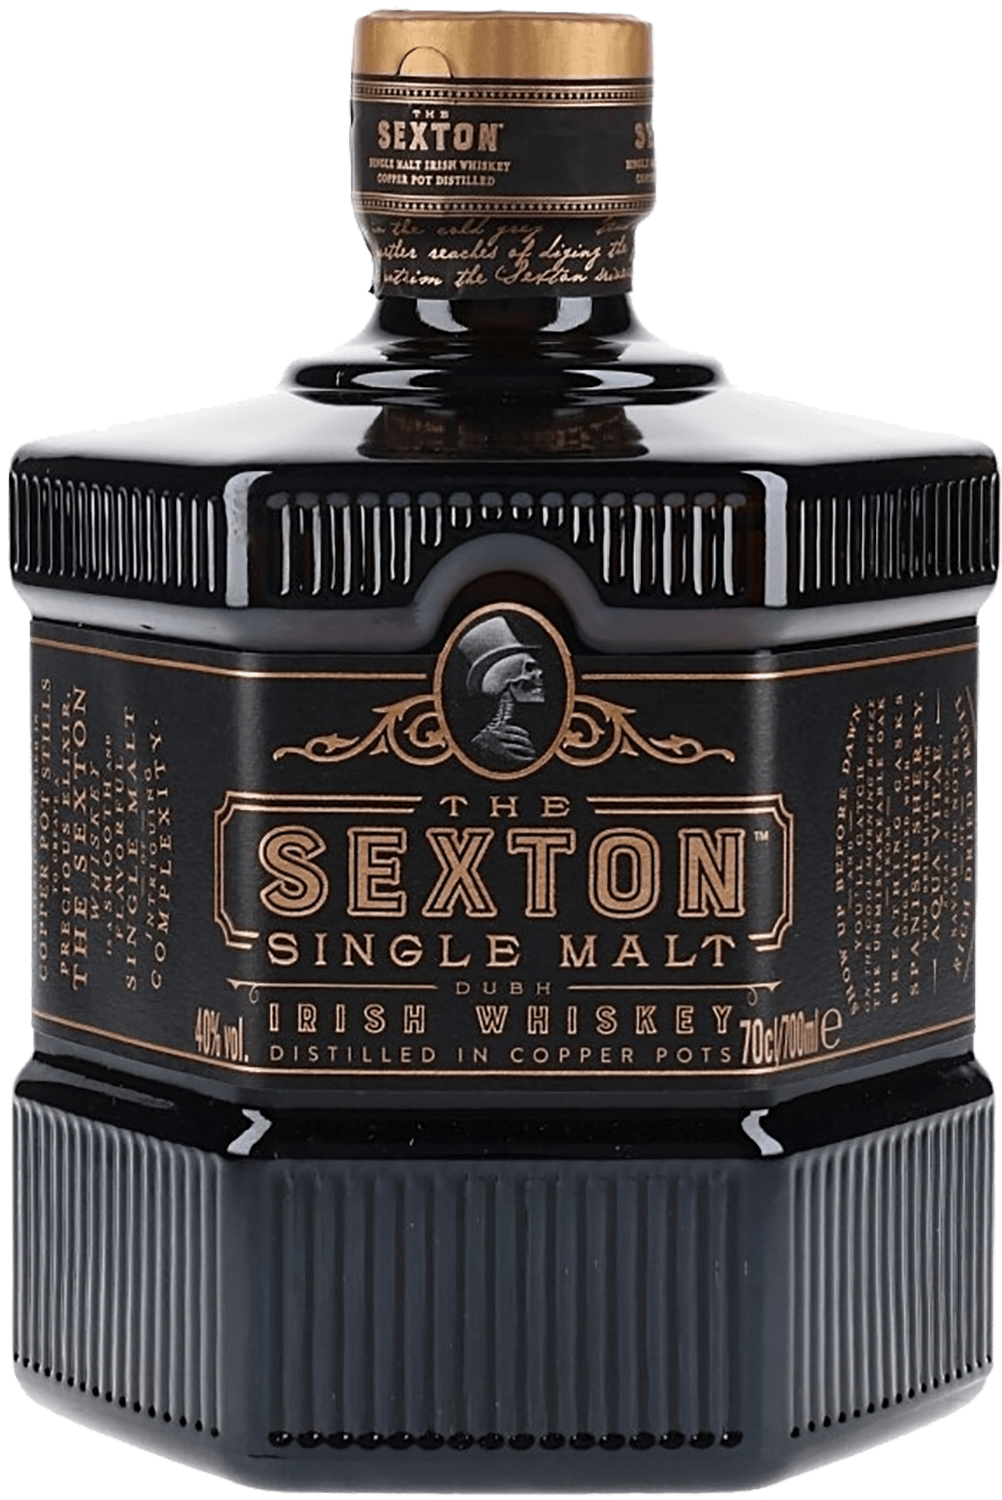 The Sexton Single Malt Irish Whiskey glendalough 7 y o single malt irish whiskey gift box